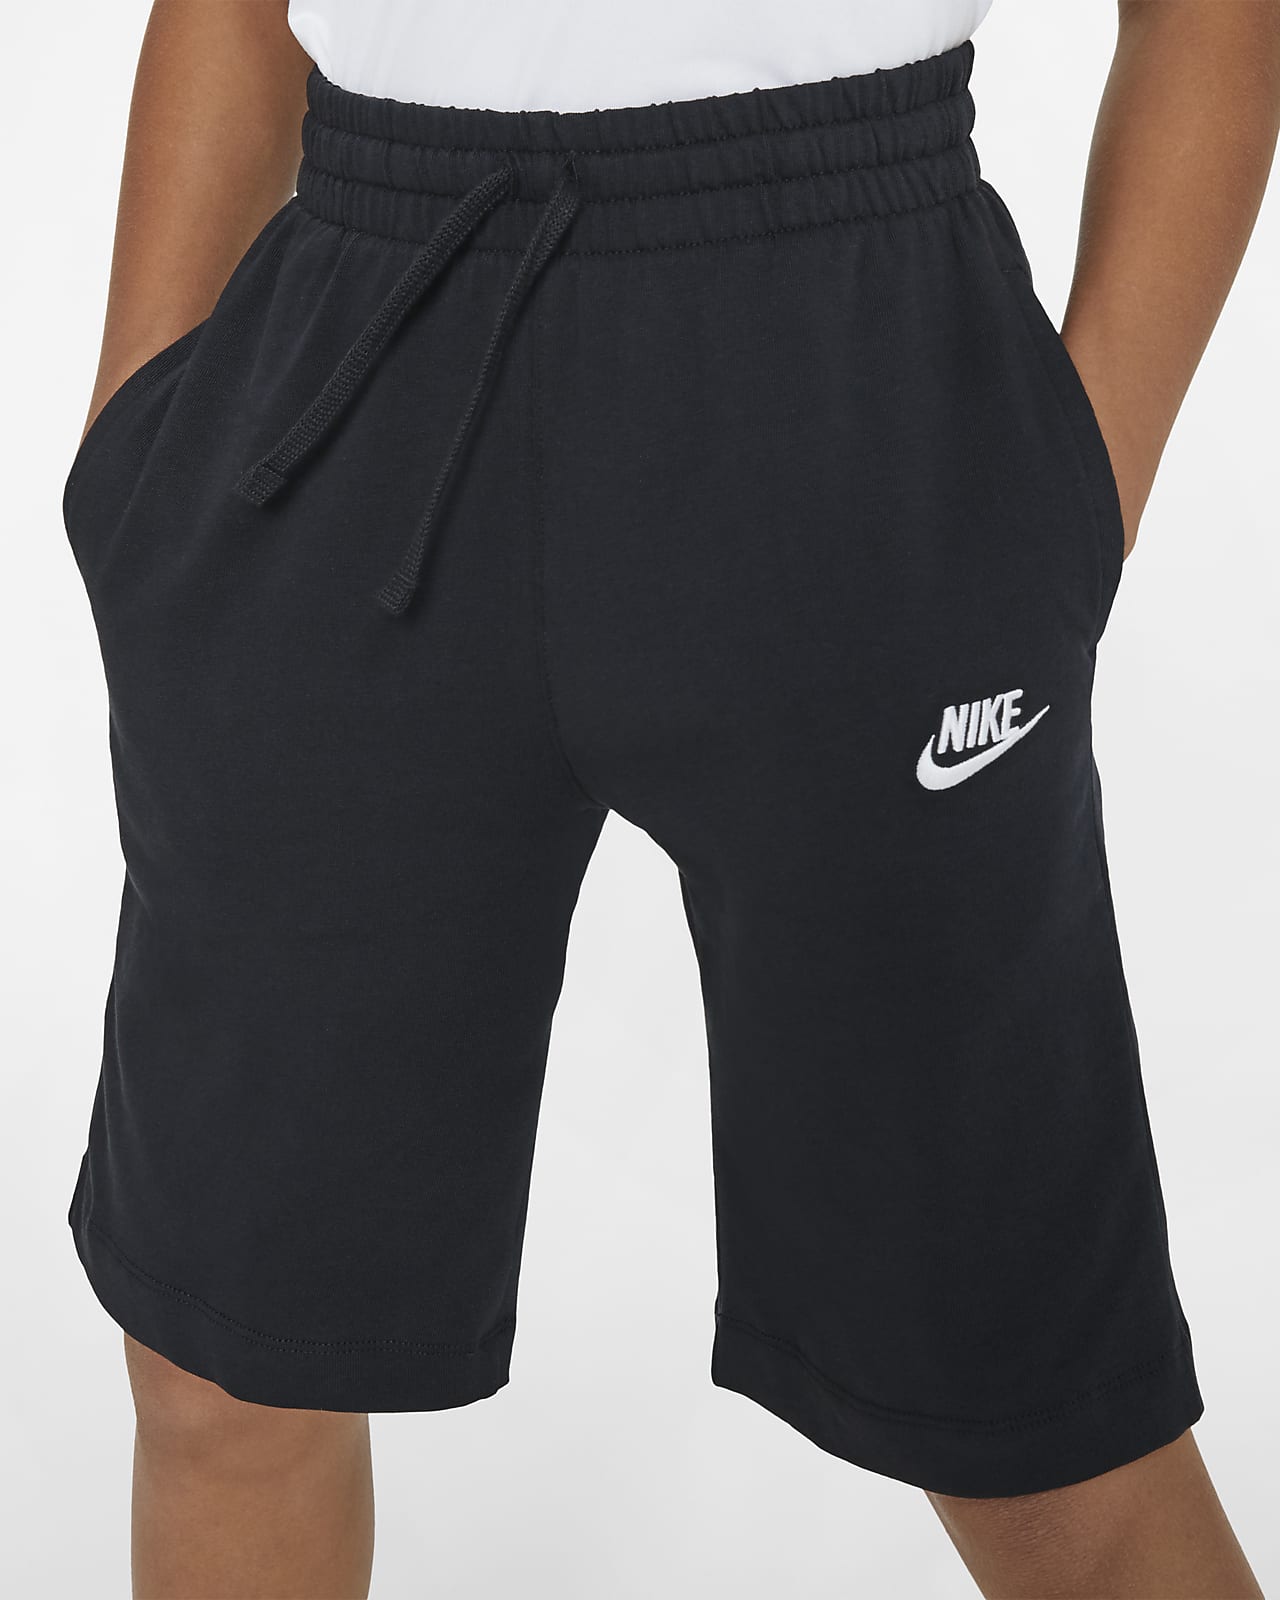 boys large nike shorts